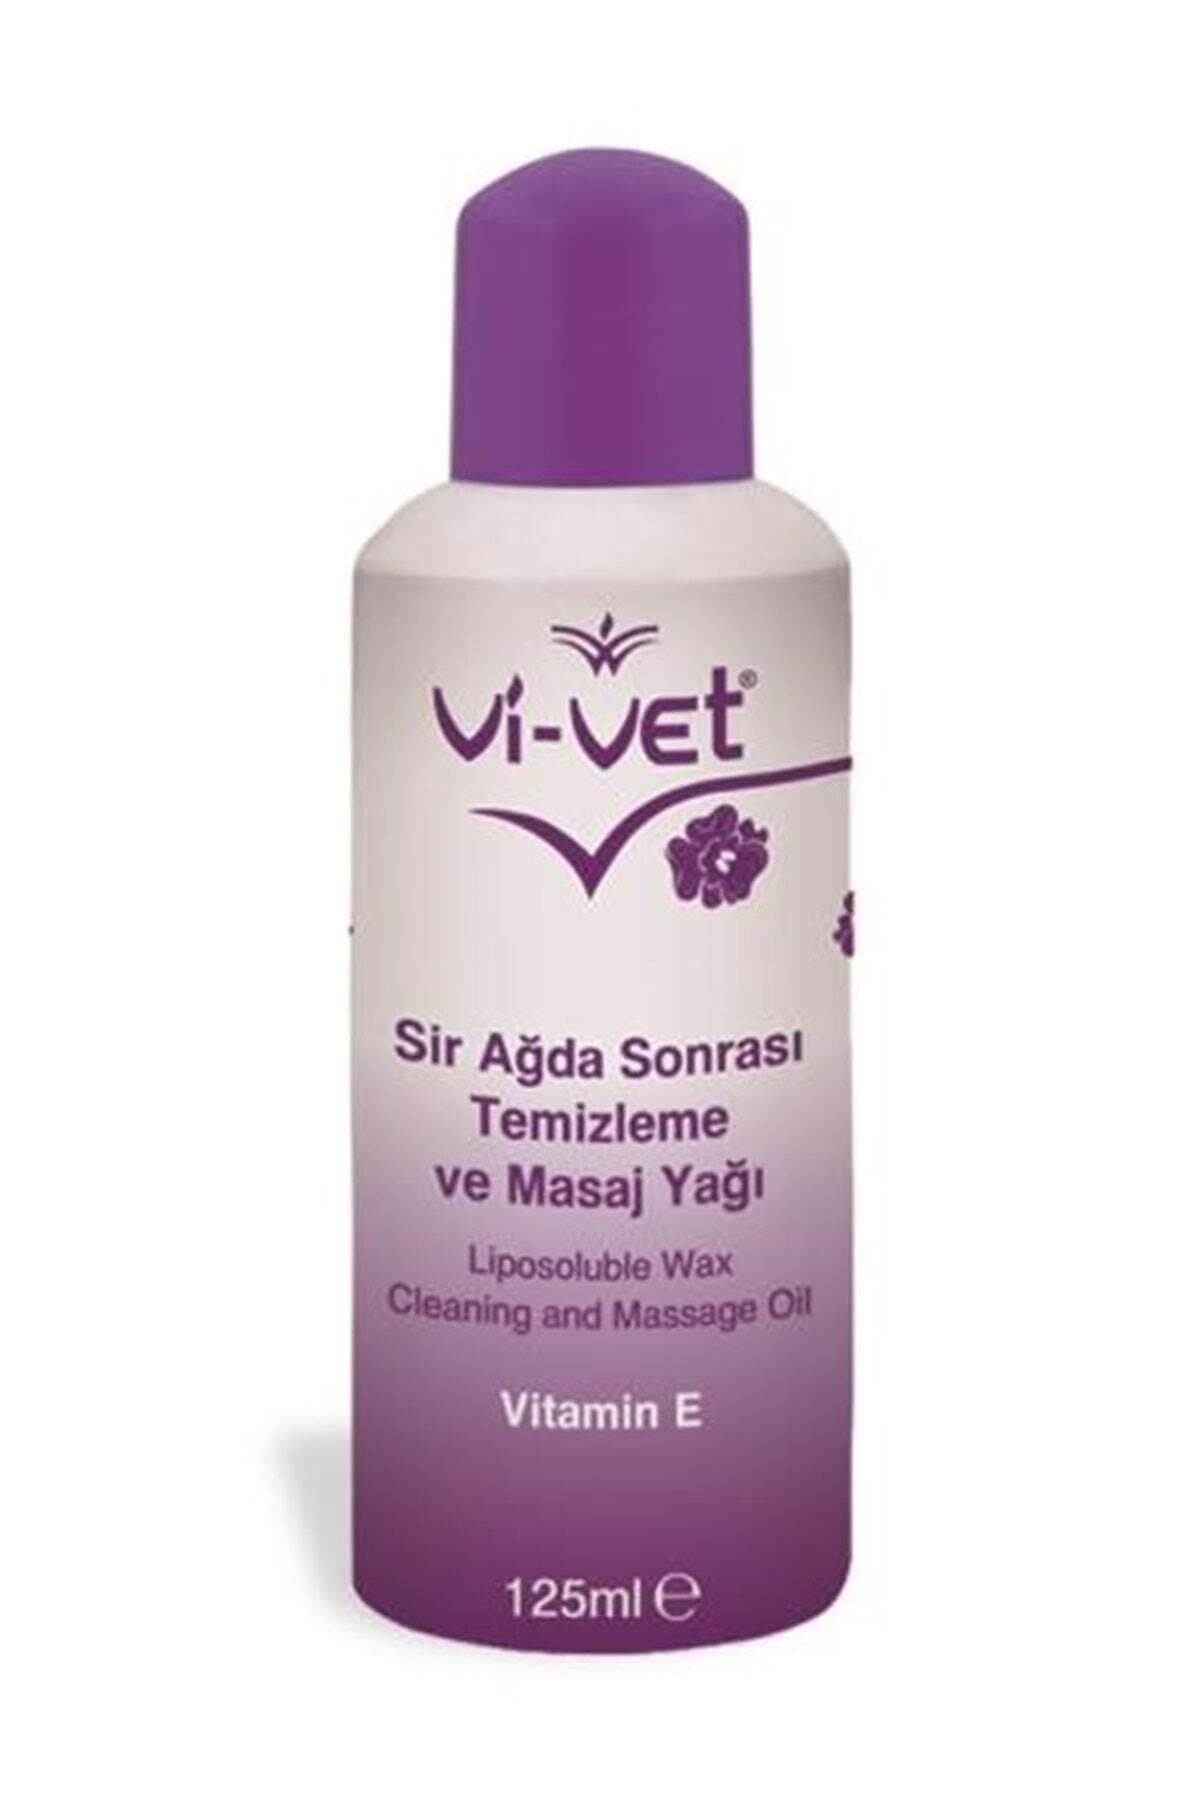 Vi vet Vivet Sir Ağda Sonrası Temizleme Ve Masaj Yağı E Vitamini 125 ml